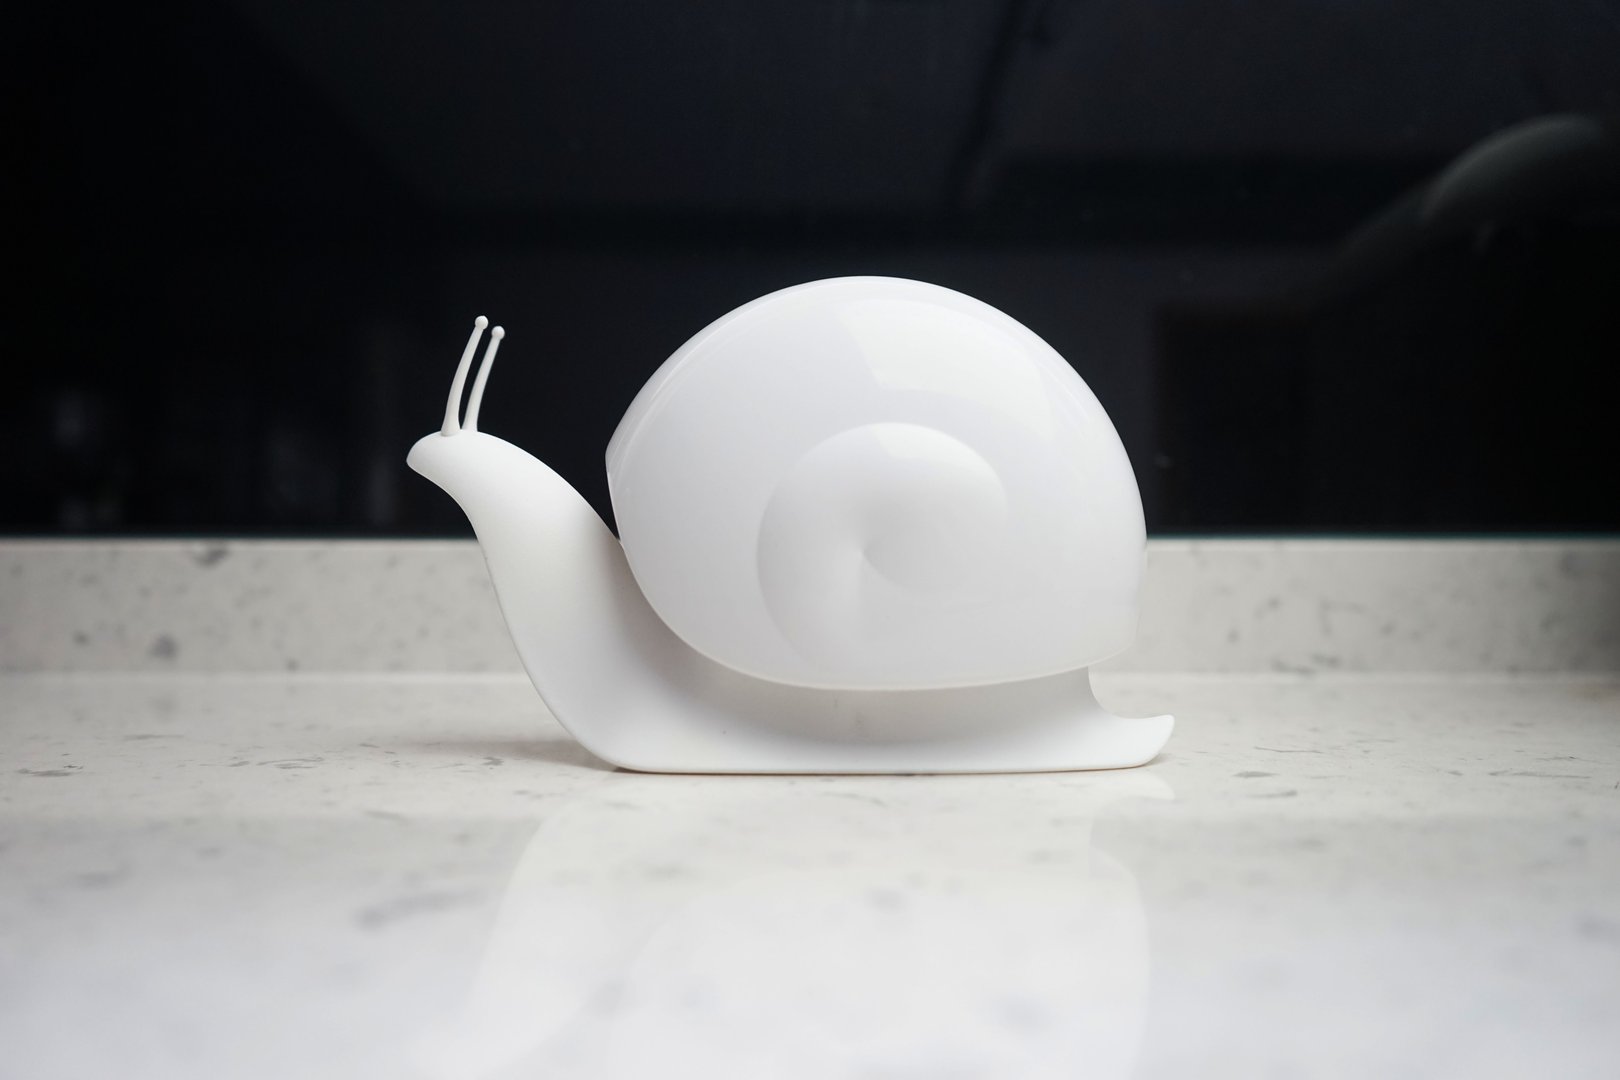 Soap dispenser snail white - Qualy